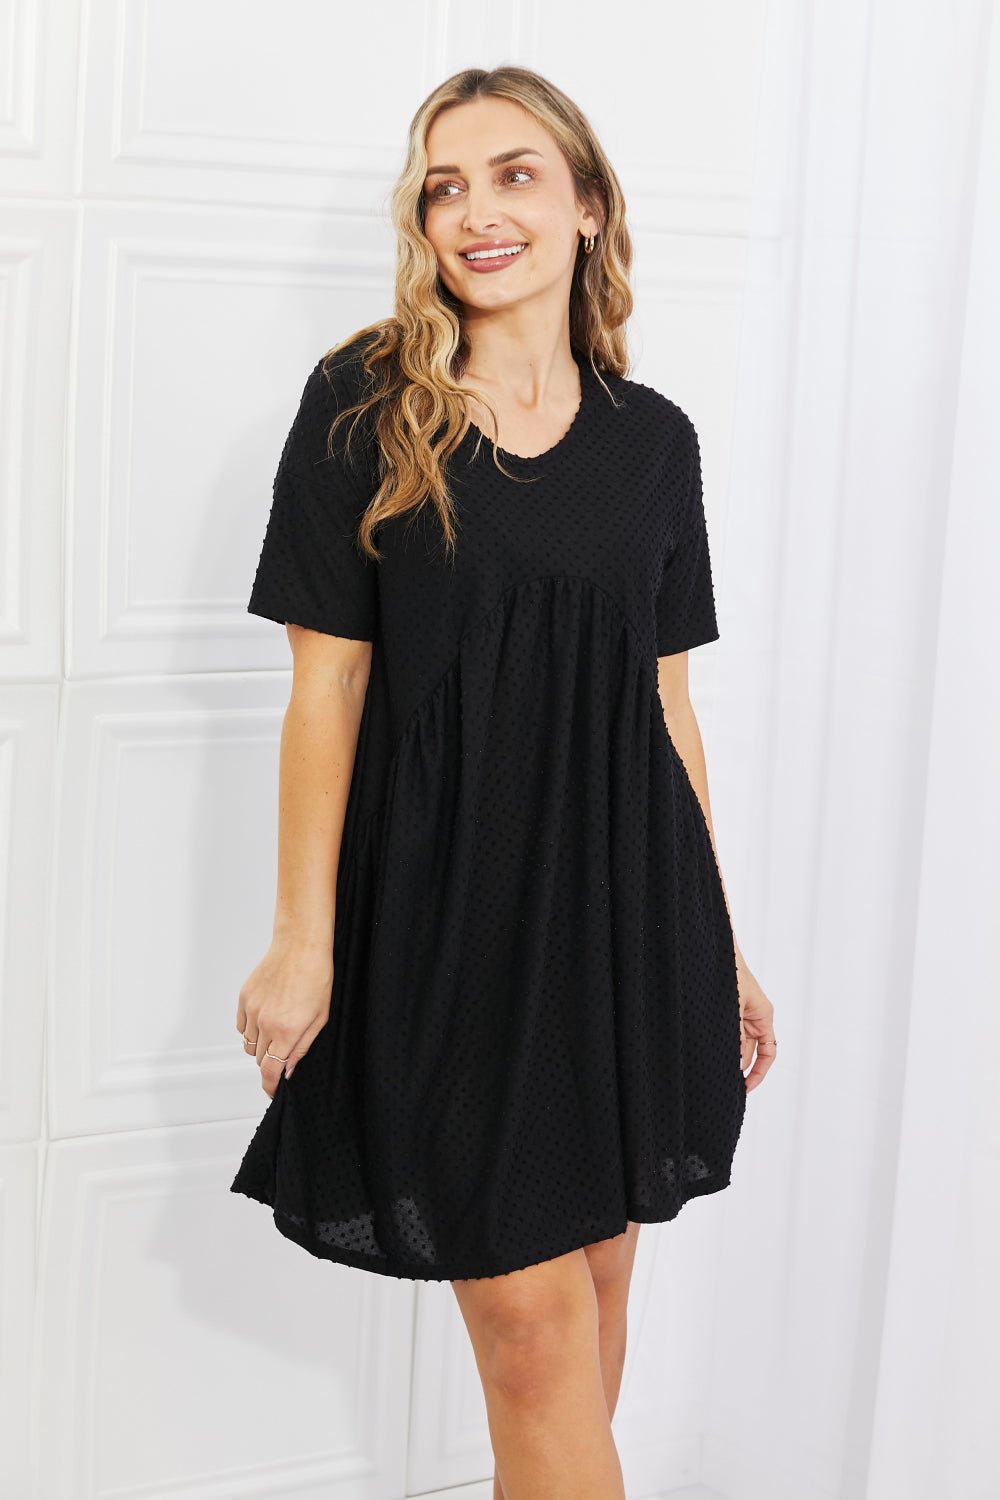 Swiss Dot Casual Mini Dress in BlackMini DressBOMBOM